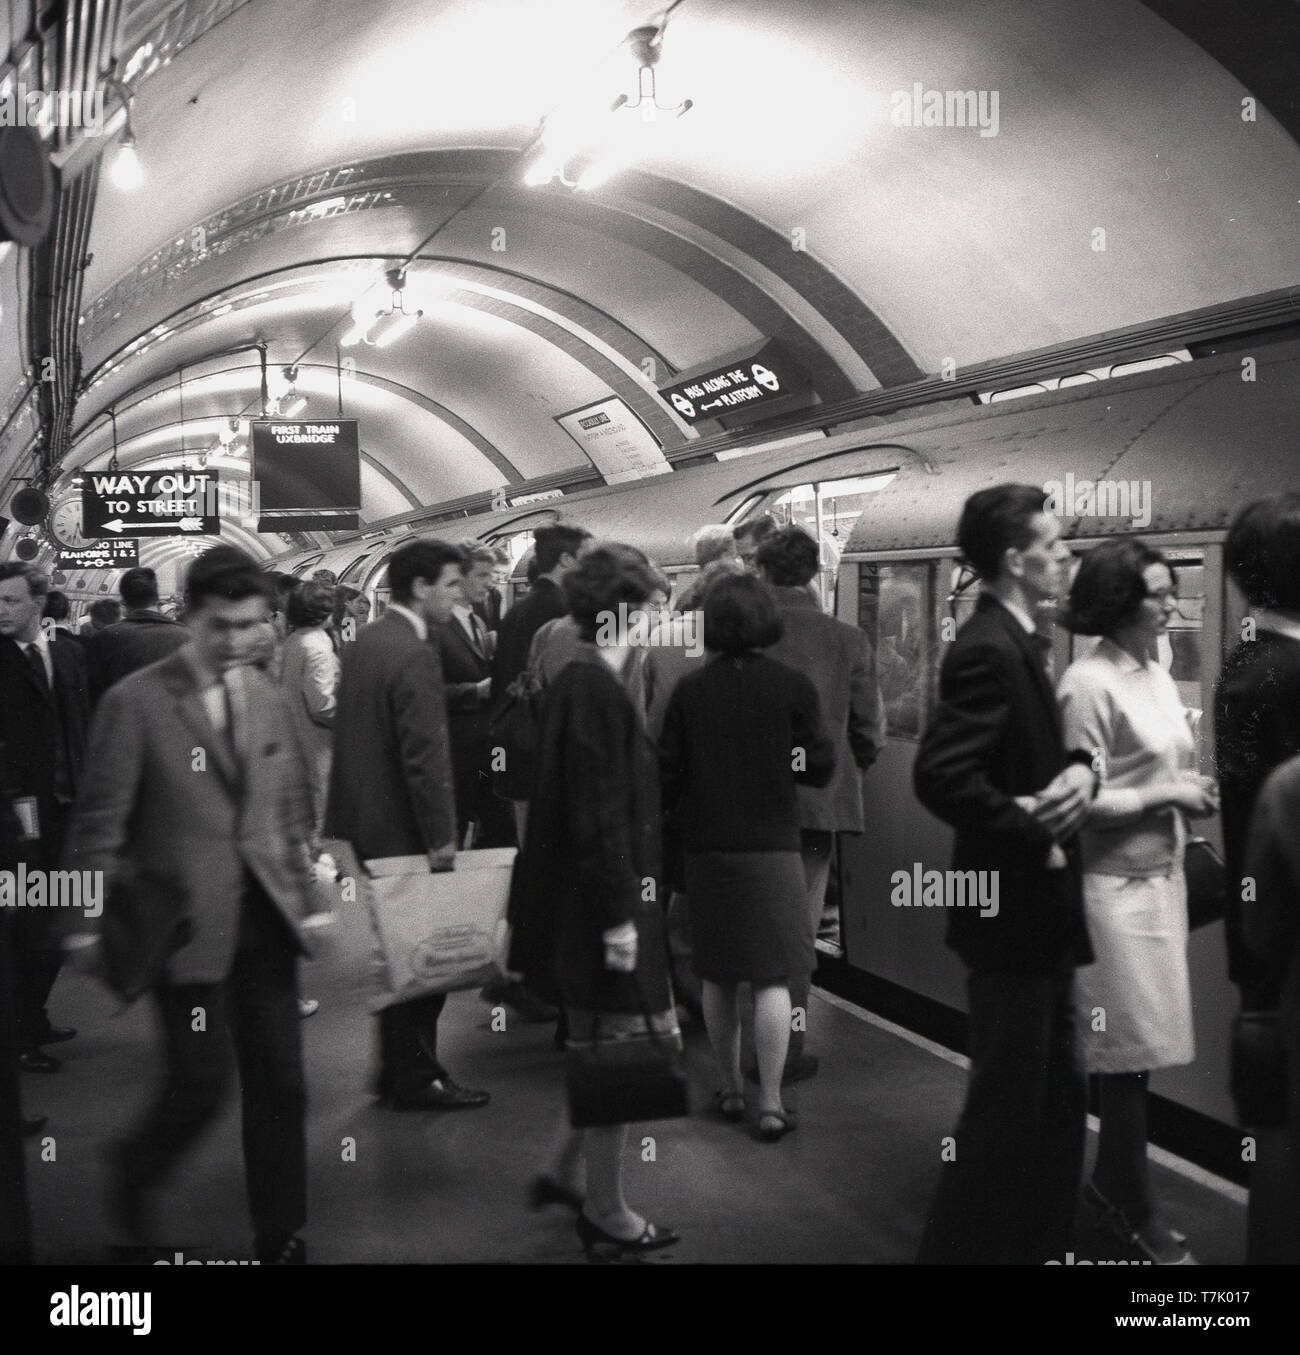 1960, historische, in der Londoner U-Bahn, Bild zeigt die Piccadilly U-Bahn auf einer Plattform an einer Station, an der belebten Plattform Menschen sind in den Zug einsteigen, die in Uxbridge ist .... 1906 eröffnet, die Piccadilly Linie verläuft von Norden Londons, nordwestlich von London. Stockfoto